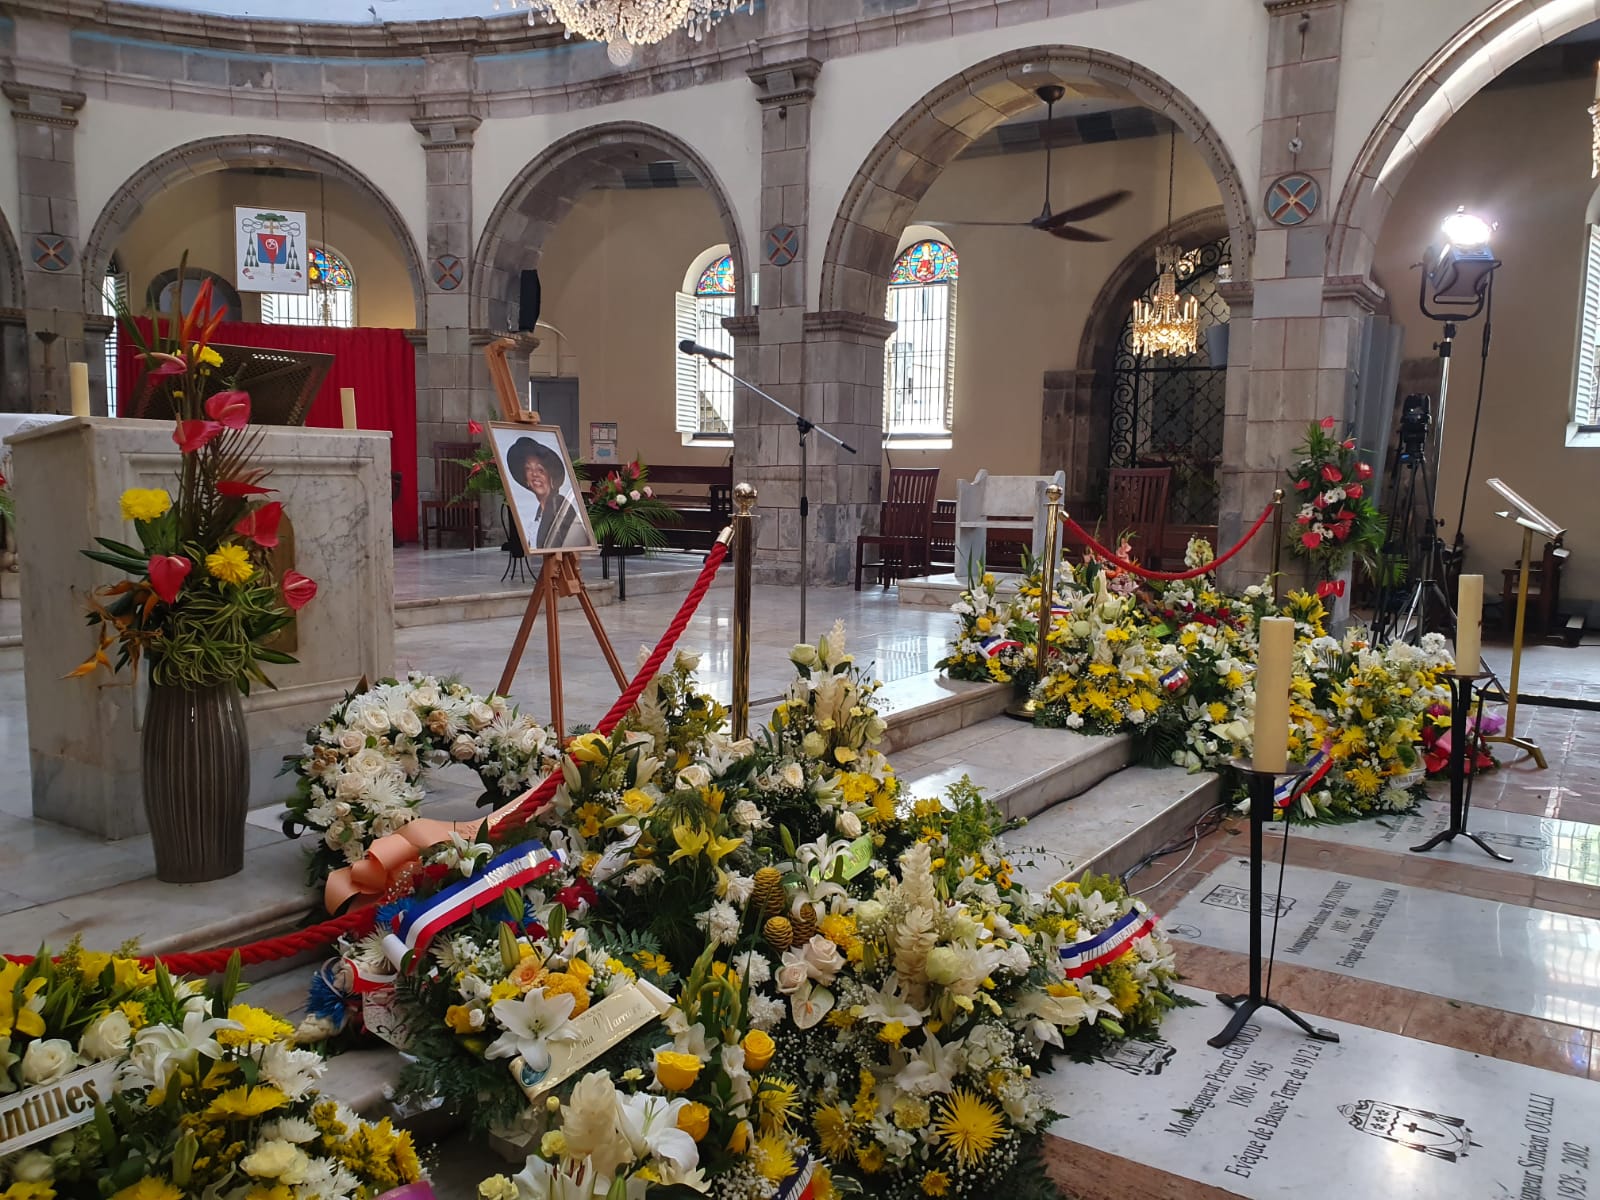     [LIVE] Suivez les funérailles de Lucette Michaux-Chevry à la cathédrale de Basse-Terre 

